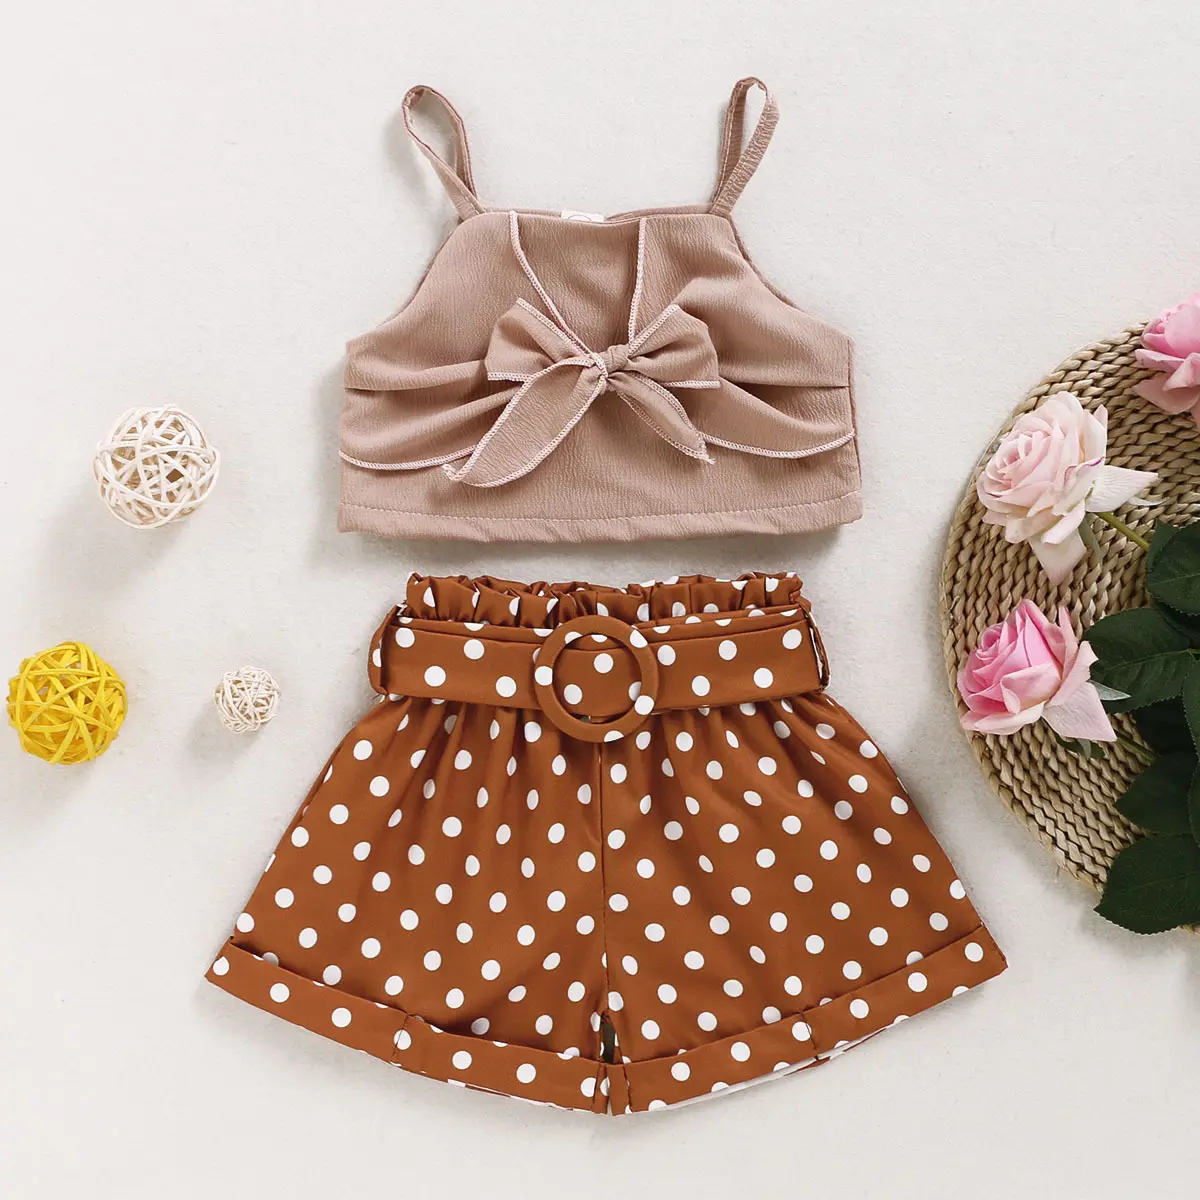 Satu set pakaian anak perempuan, dua potong celana pendek polka dot, rompi halter pita mode musim panas untuk anak perempuan